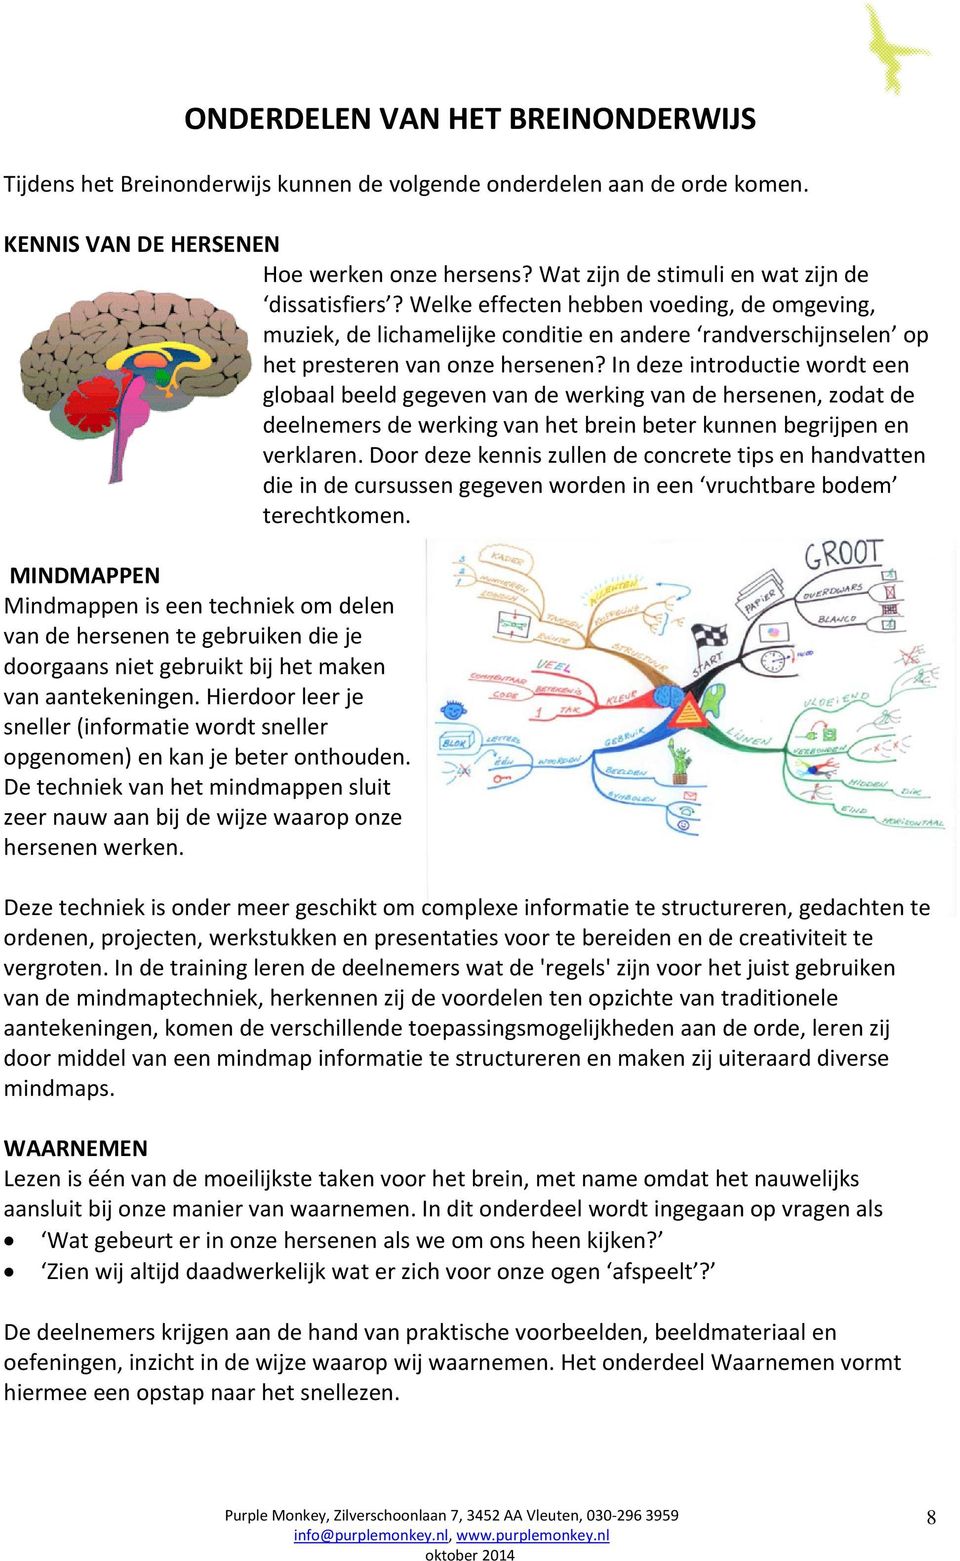 In deze introductie wordt een globaal beeld gegeven van de werking van de hersenen, zodat de deelnemers de werking van het brein beter kunnen begrijpen en verklaren.